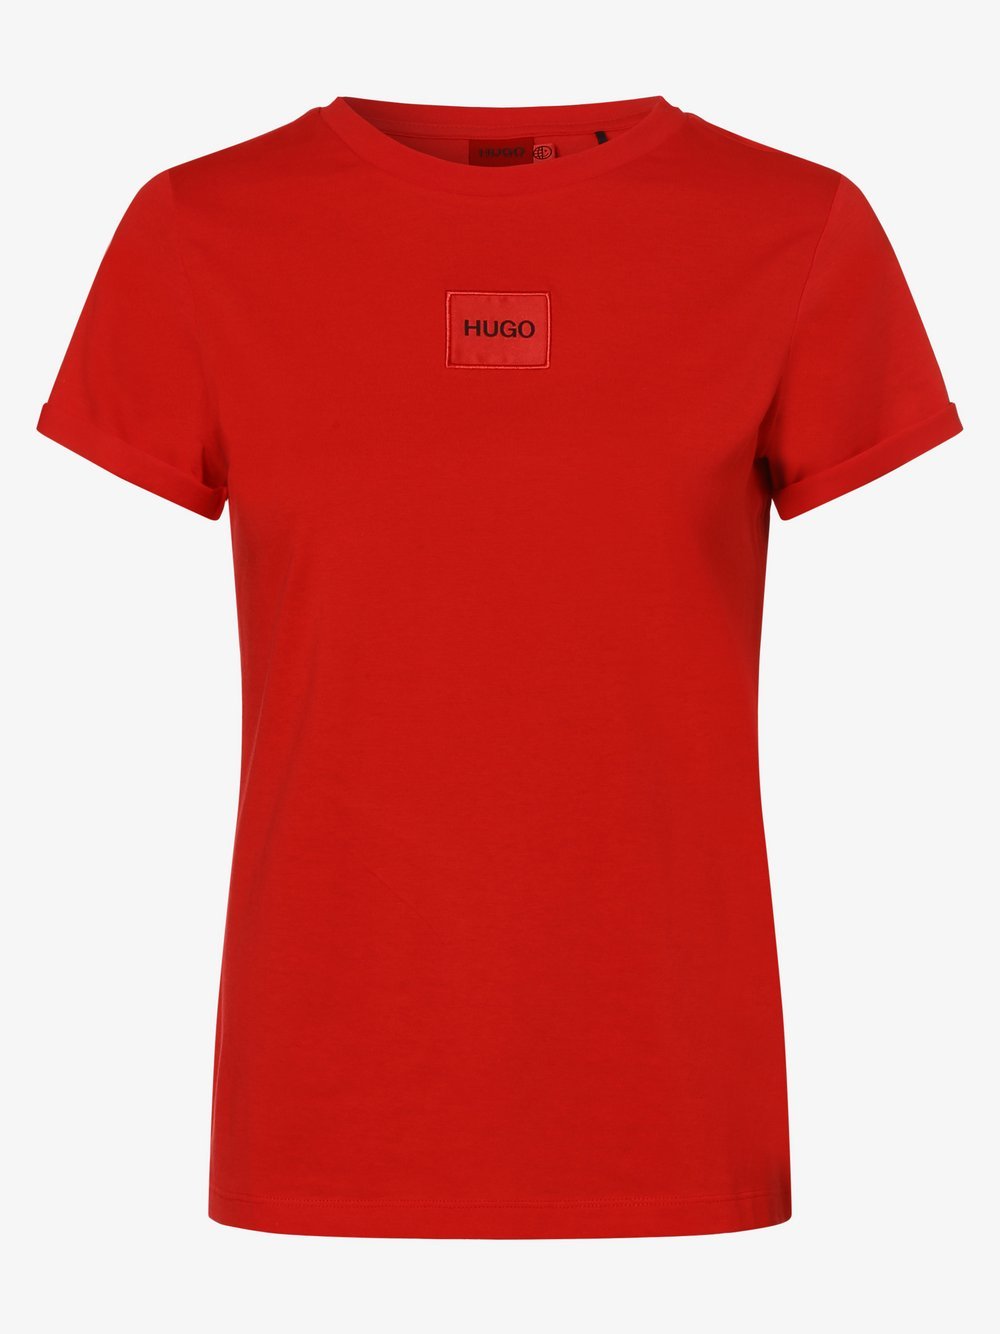 HUGO - T-shirt damski – The SlimTee_redlabel, czerwony